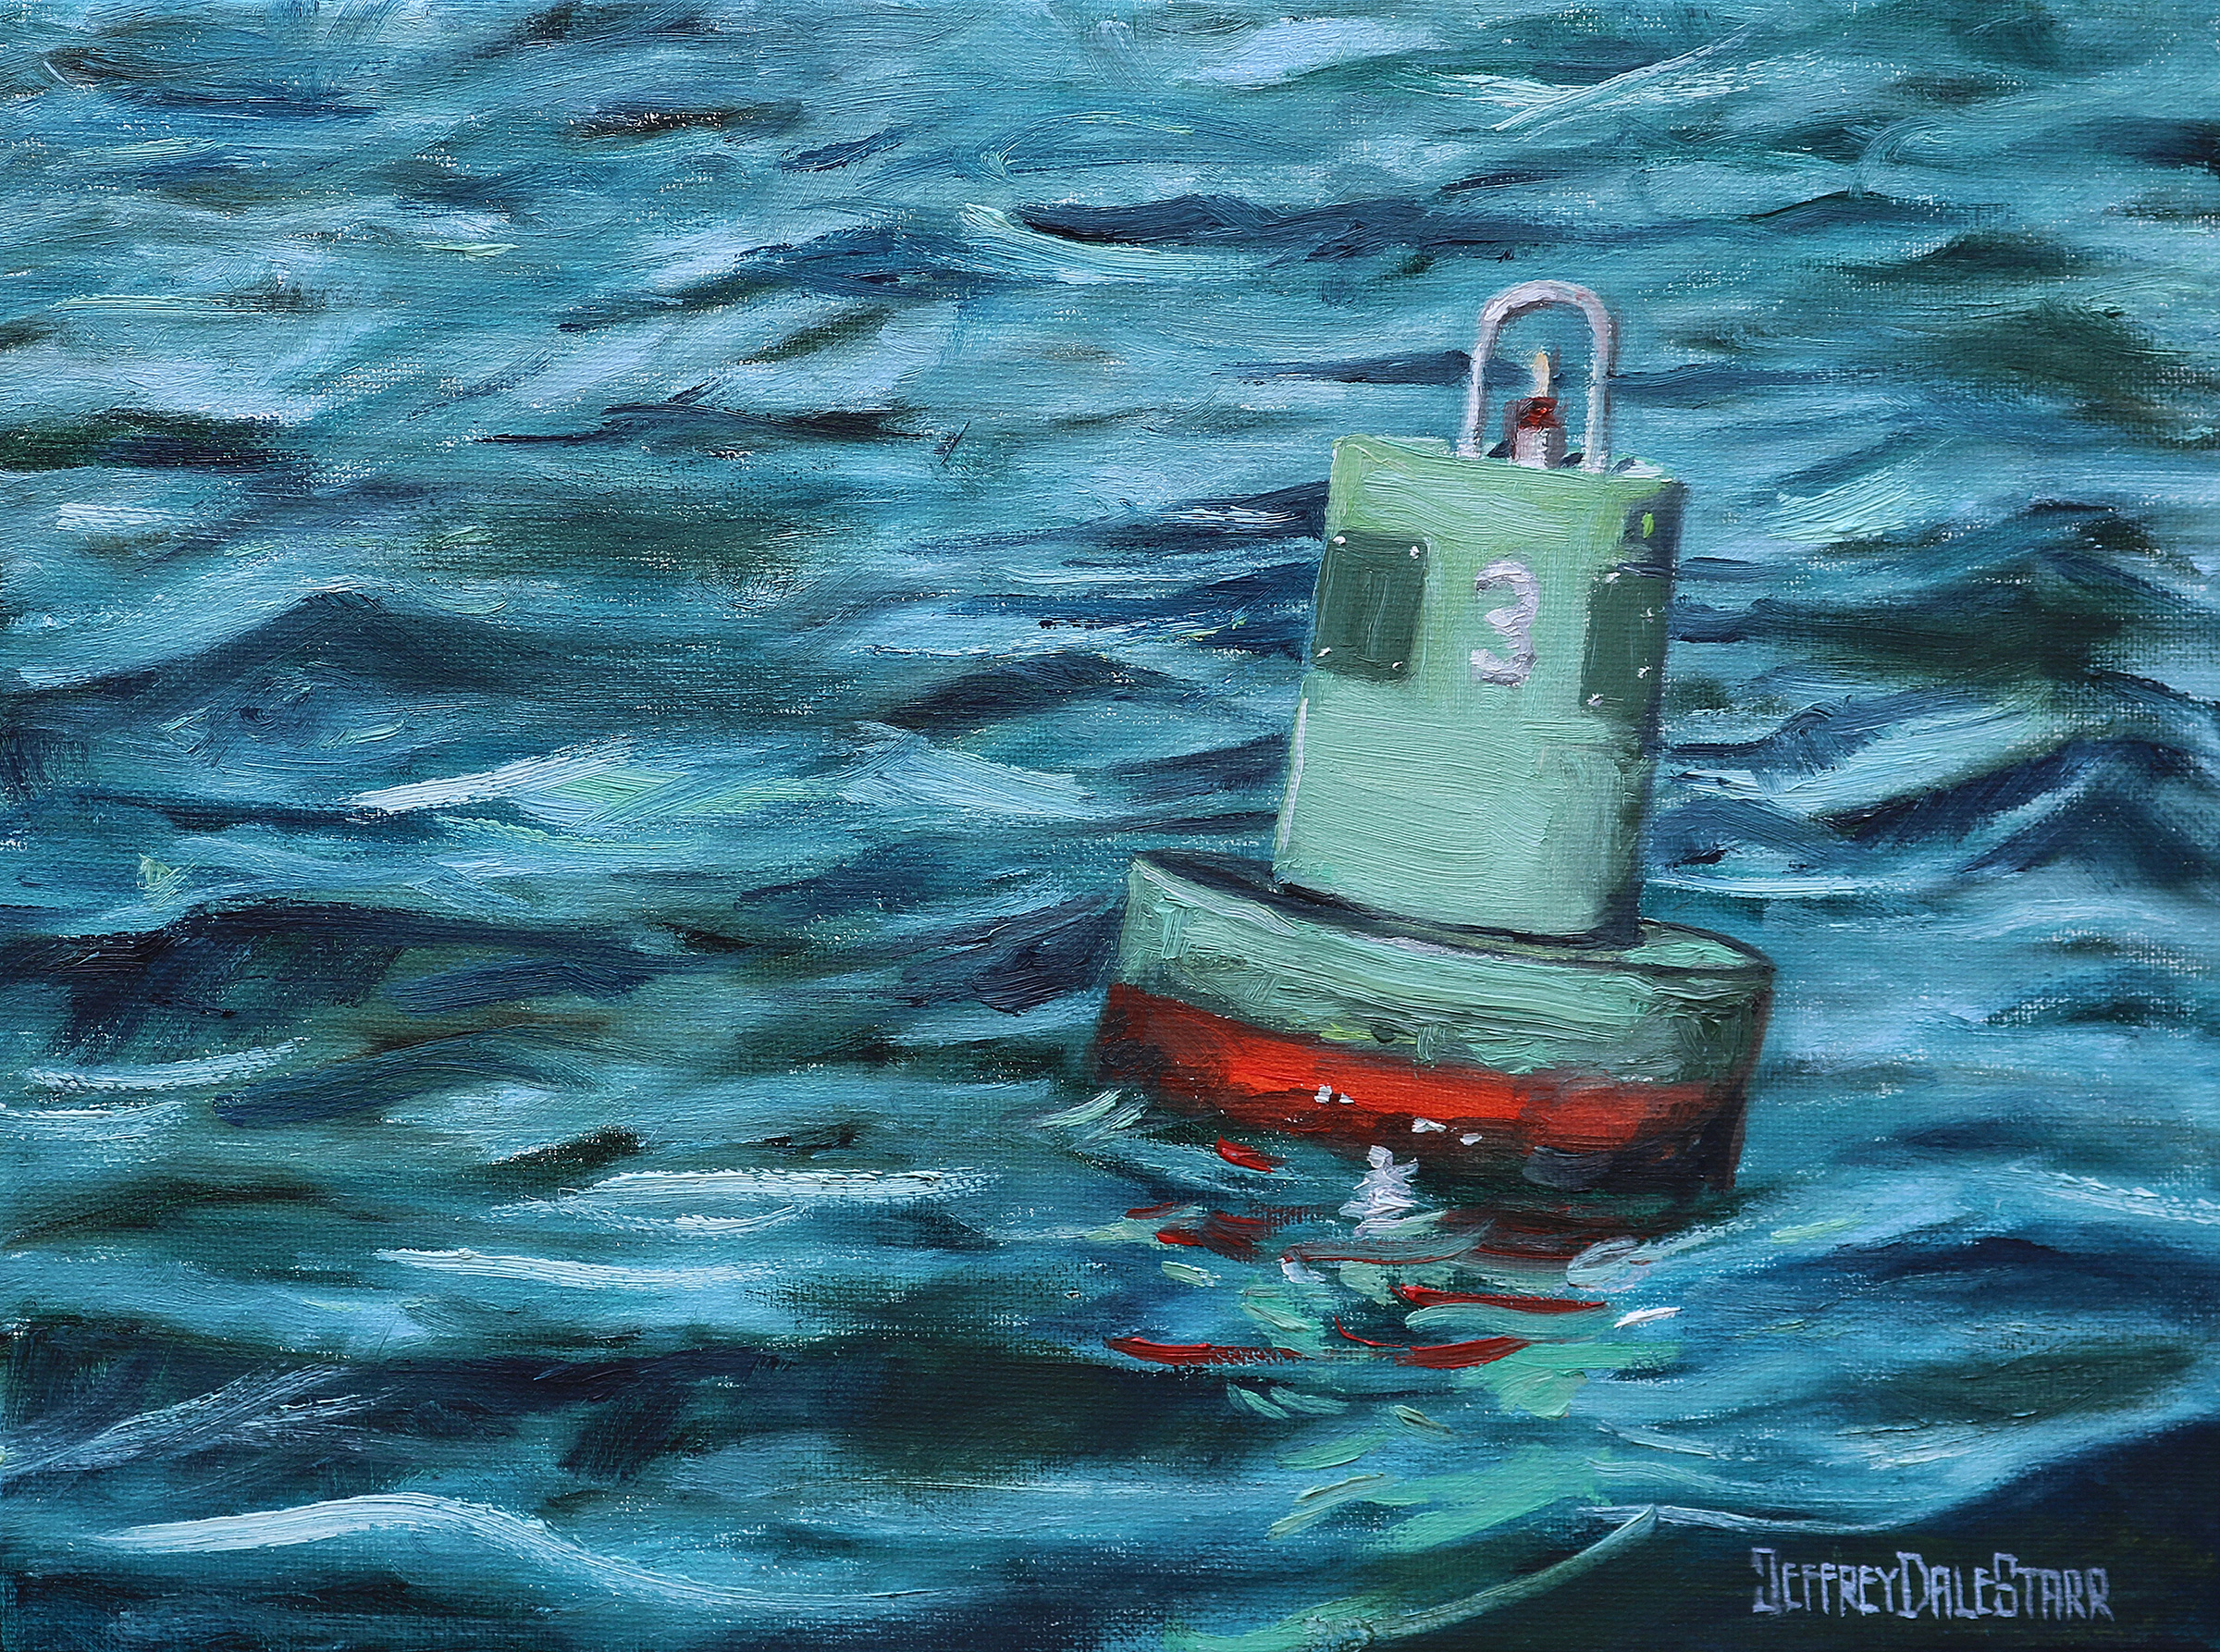 Buoy No. 3 by Jeffrey Dale Starr